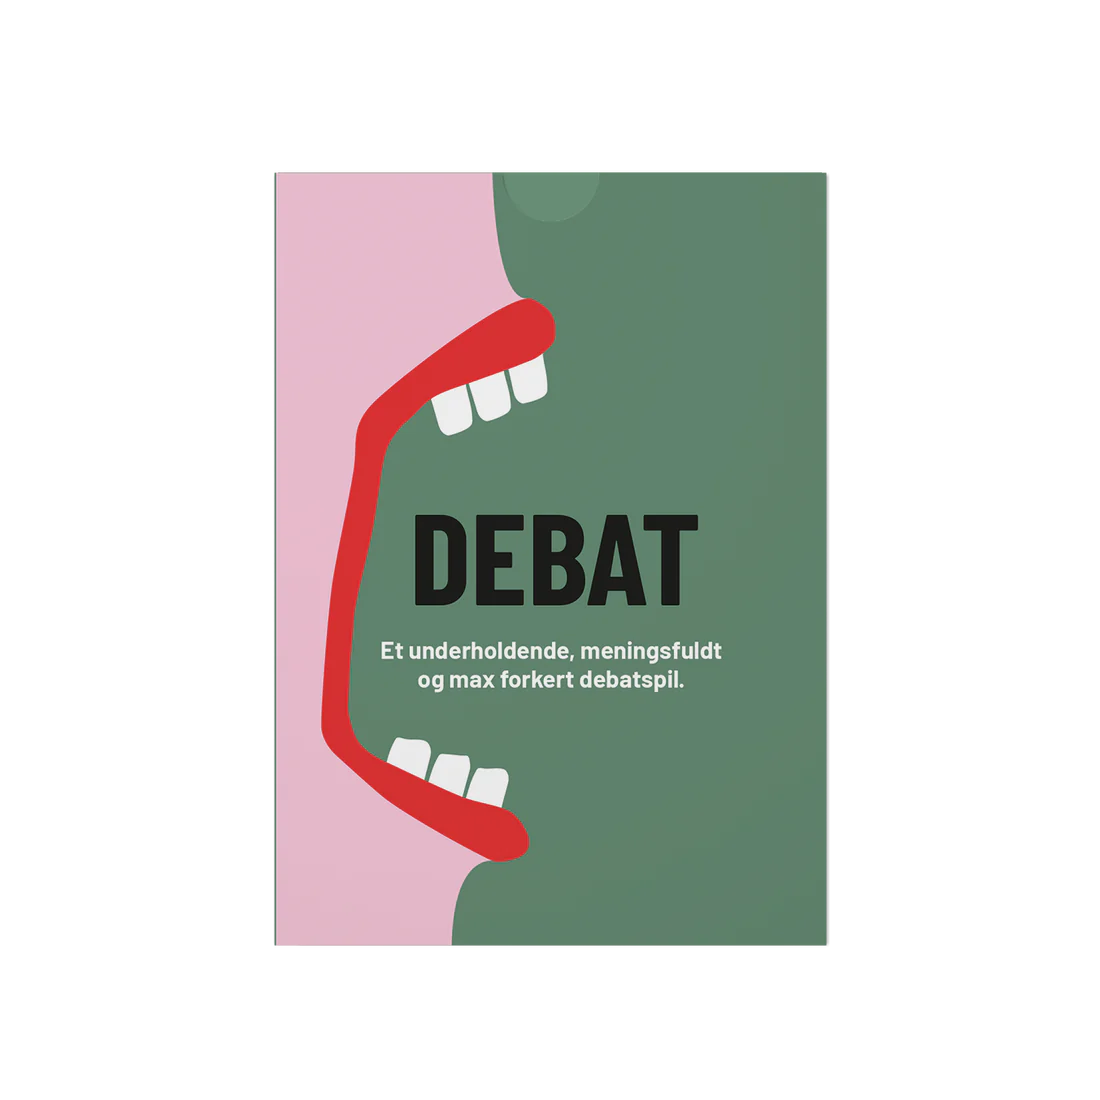 DEBAT - Et underholdende, meningsfuldt og max forkert debatspil.